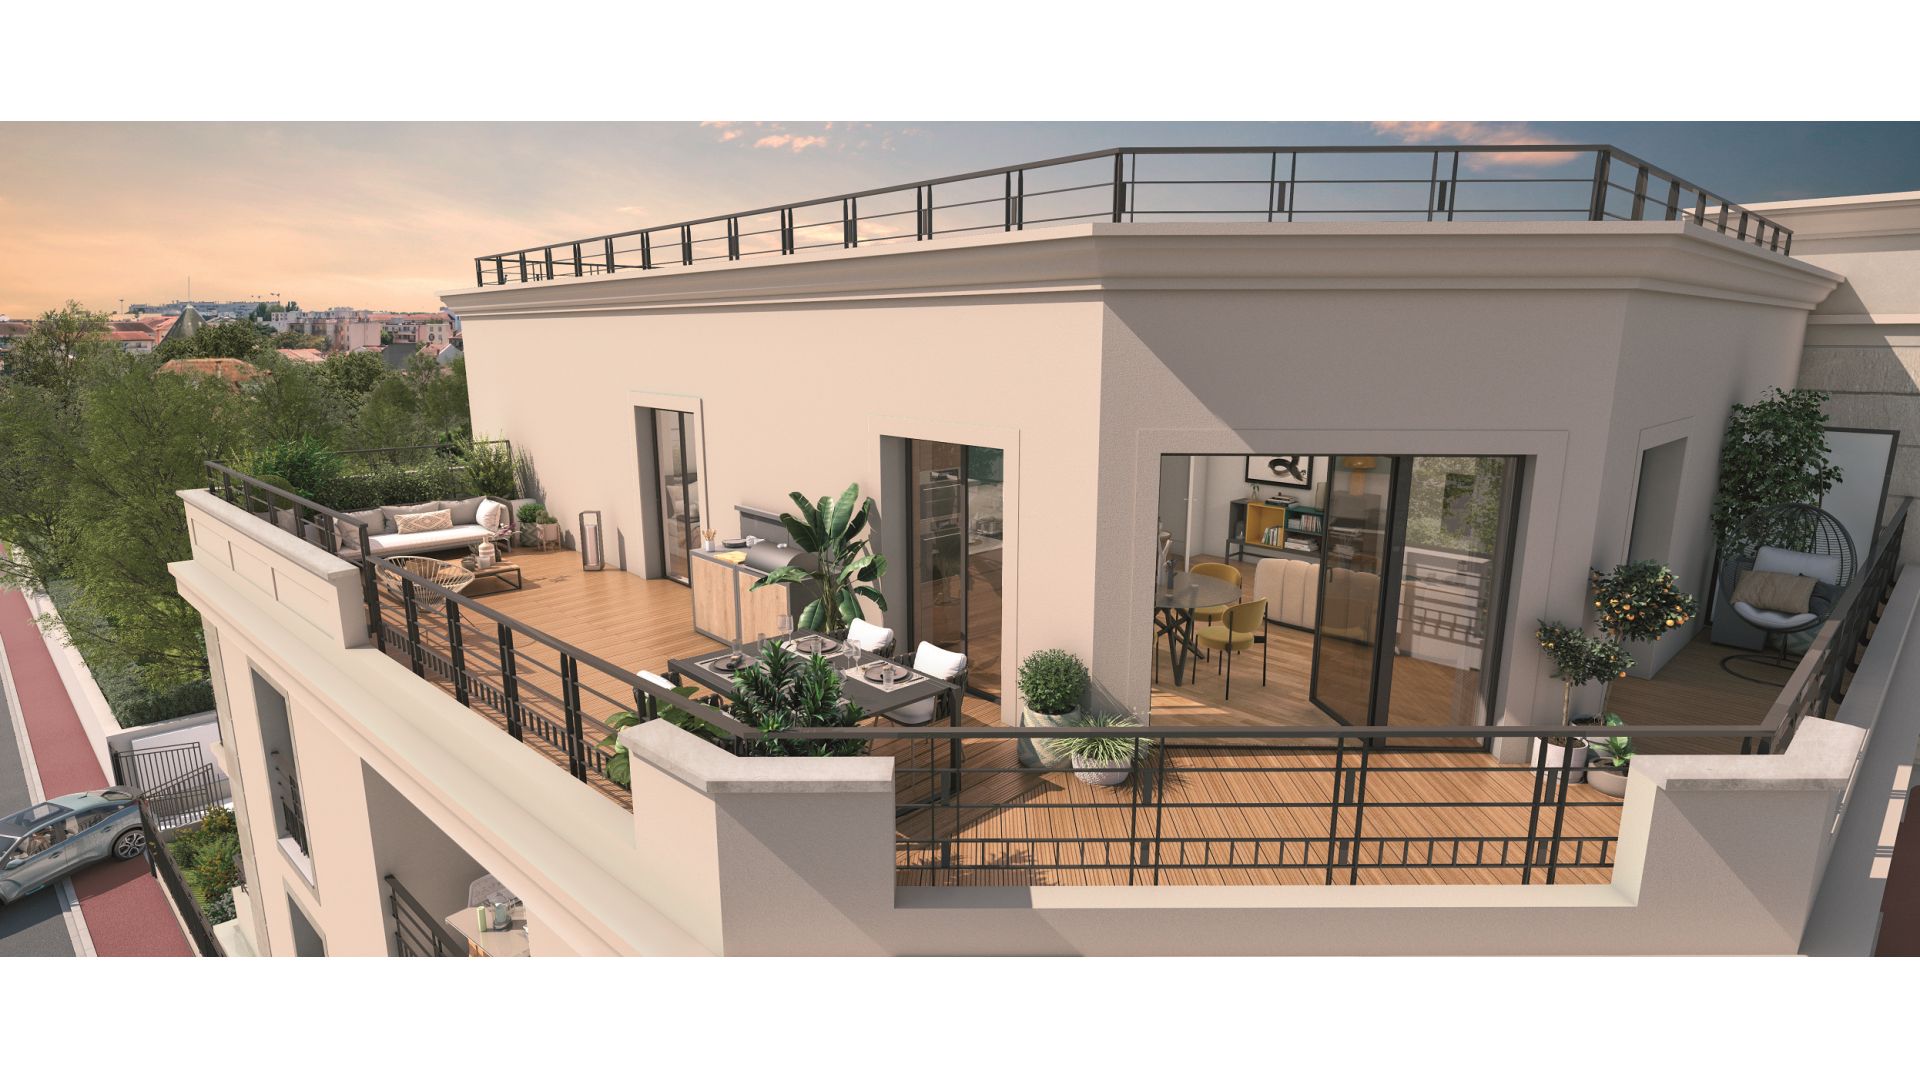 Greencity immobilier - achat appartements neufs du T1 au T4 - Résidence Le Florilège - 94500 Champigny-sur-Marne - vue terrasse